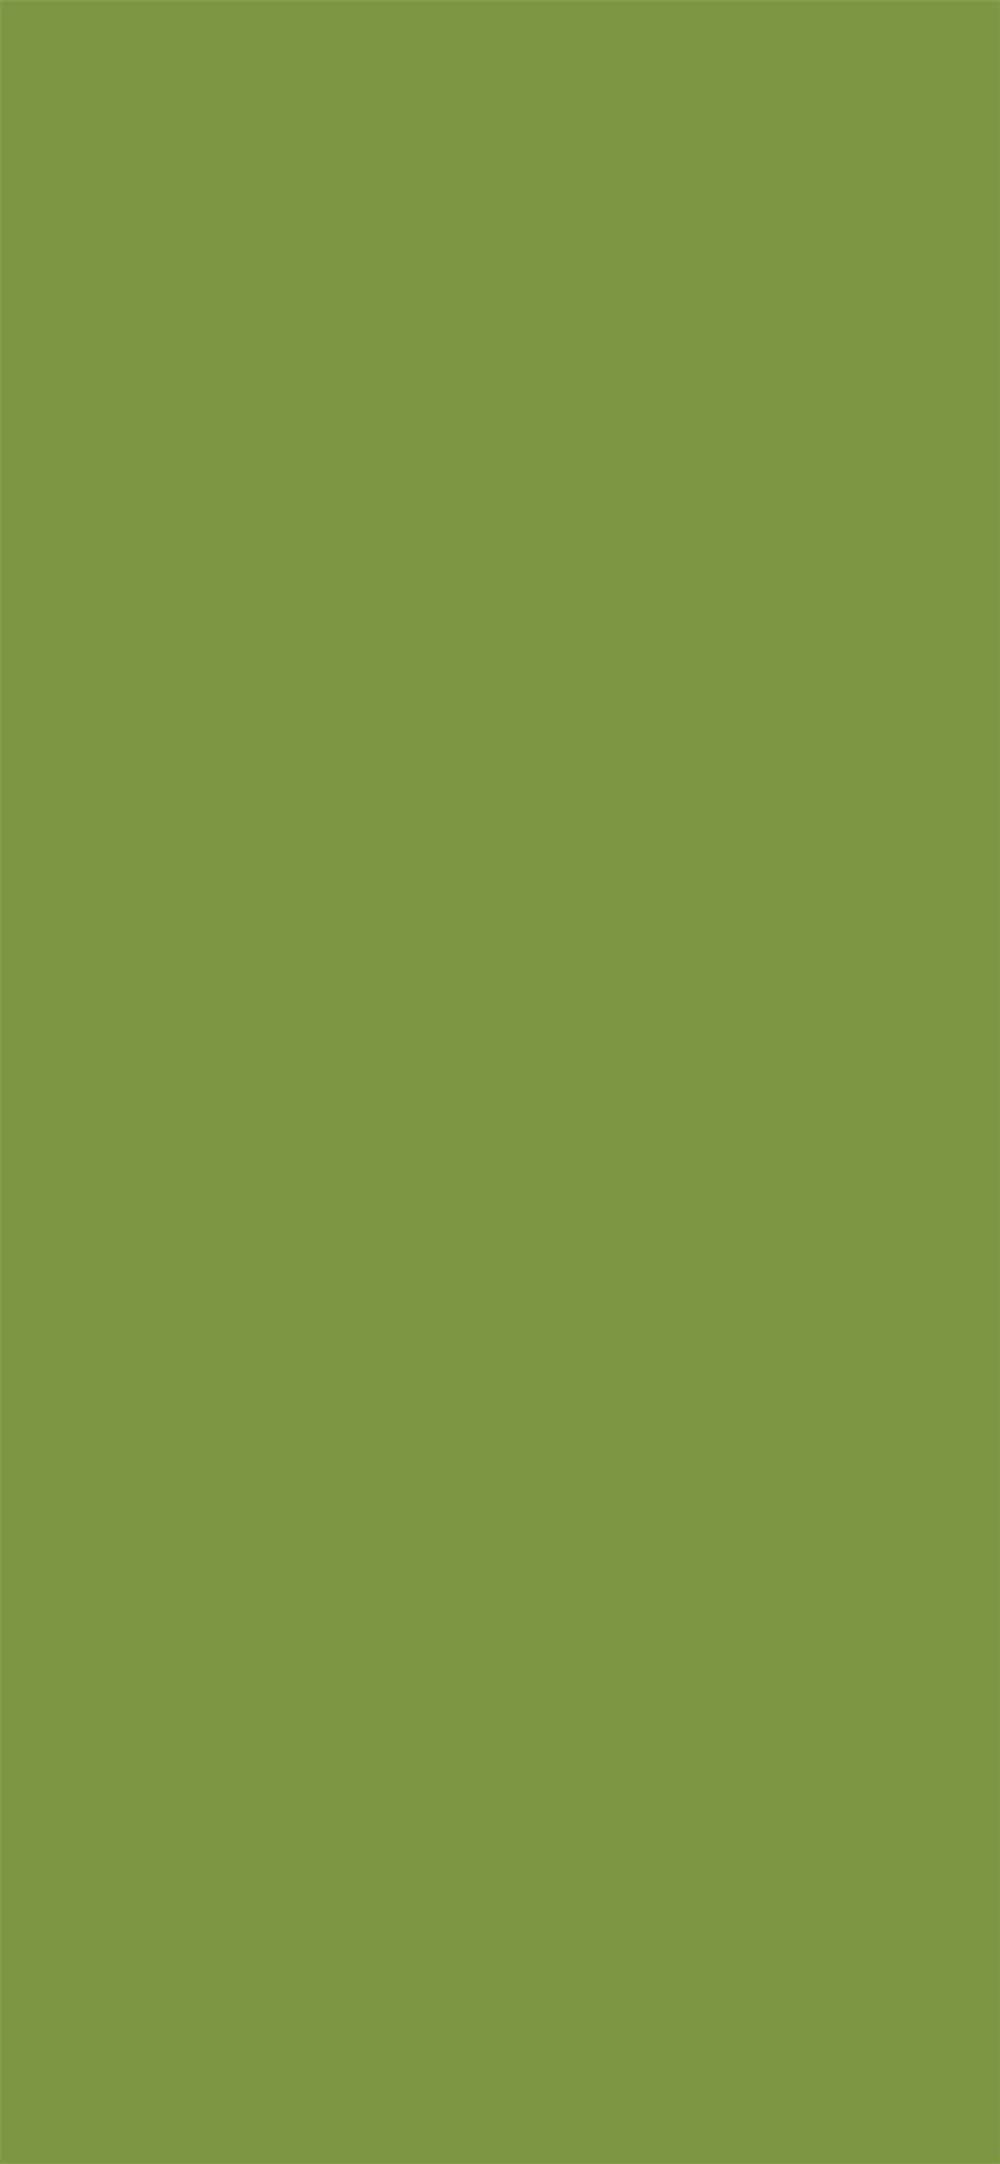 草绿色纯色手机壁纸图片